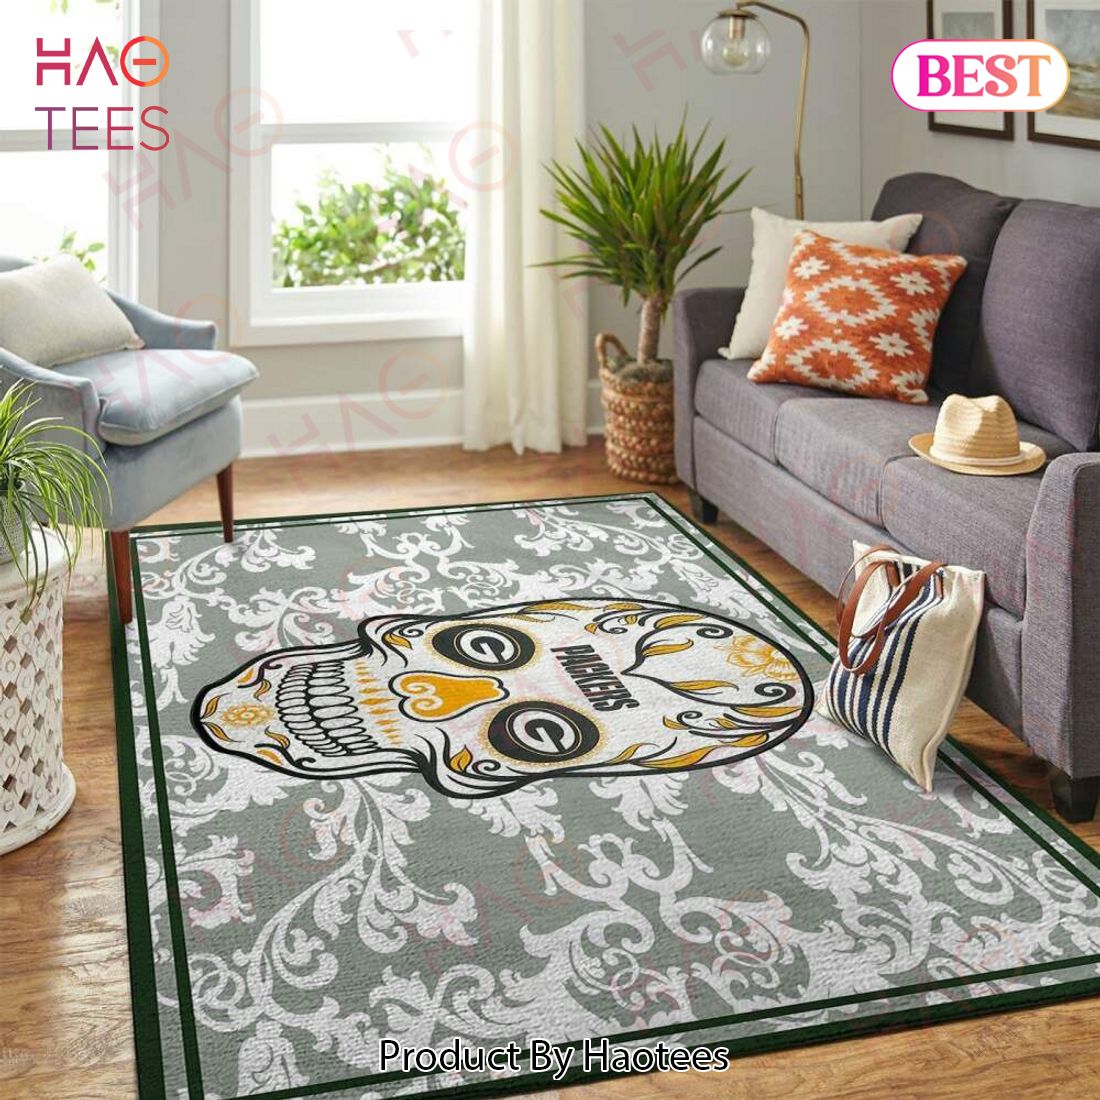 Green Bay Packers Nfl Area Rugs Skull Flower Style Living Room Carpet Sports Rug Regtangle Carpet Floor Decor Home Decor